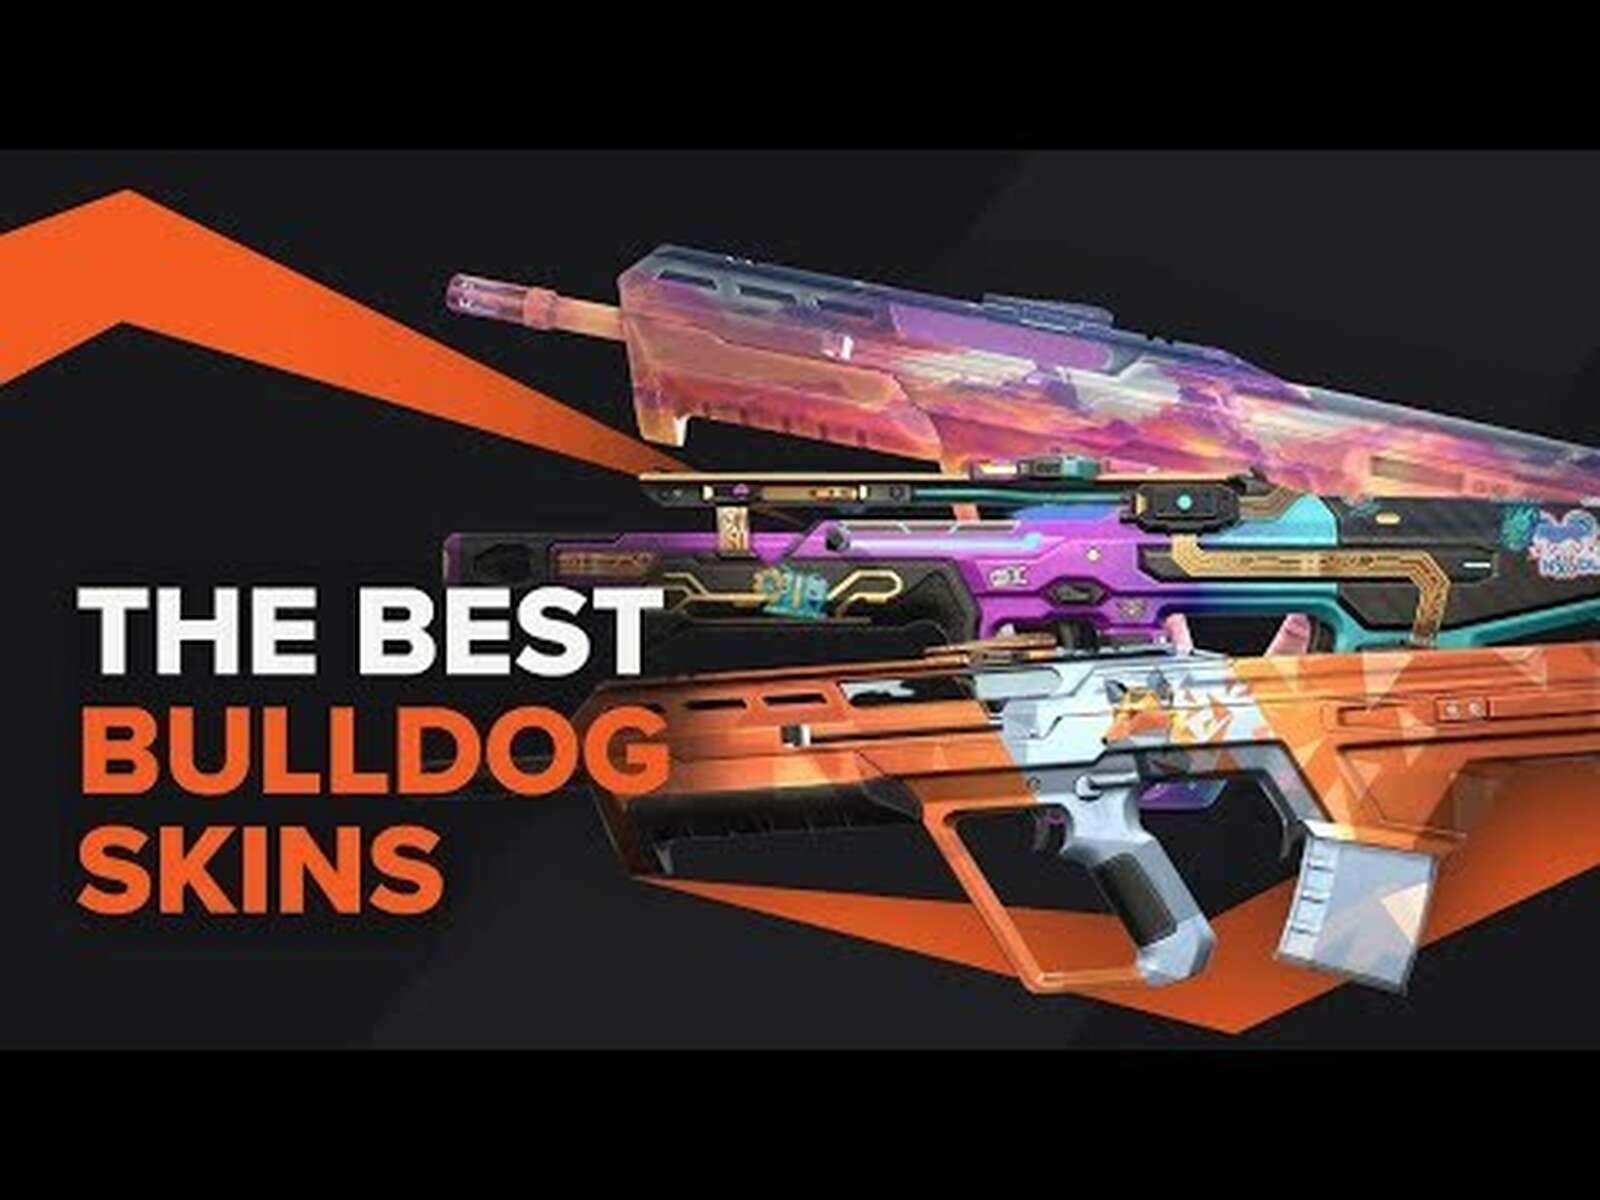 The Best Bulldog Skins in Valorant